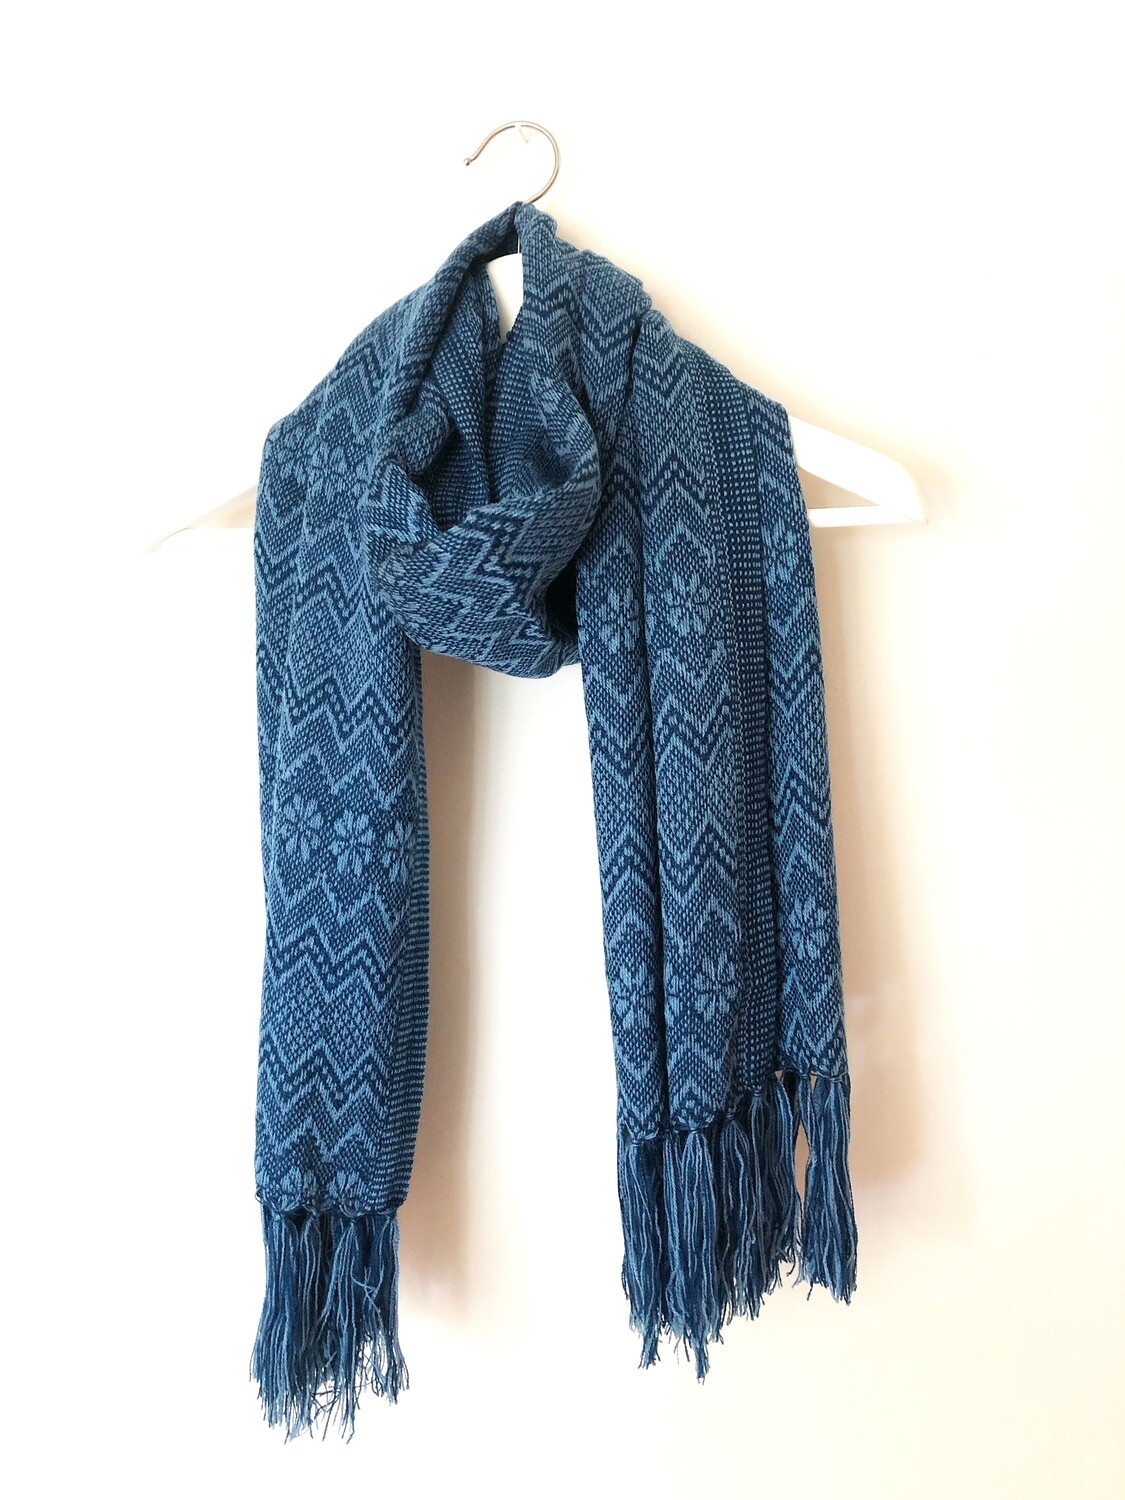 Mexikanischer Schal, Ethno Style, Blau, Geschenk für sie